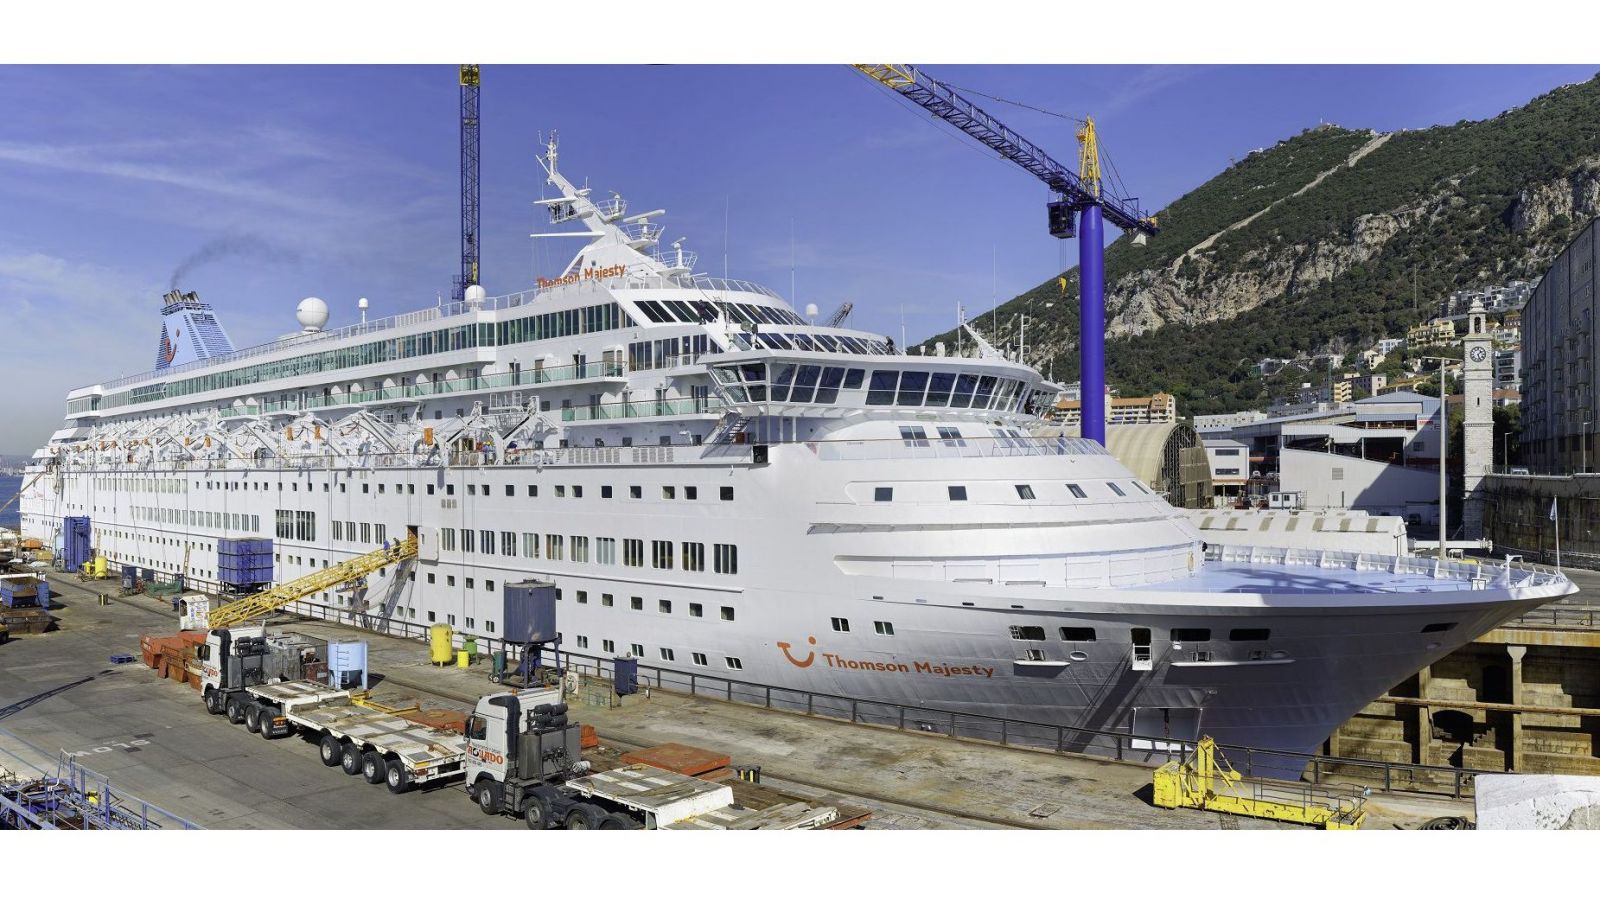 Thomas Majesty cruise ship